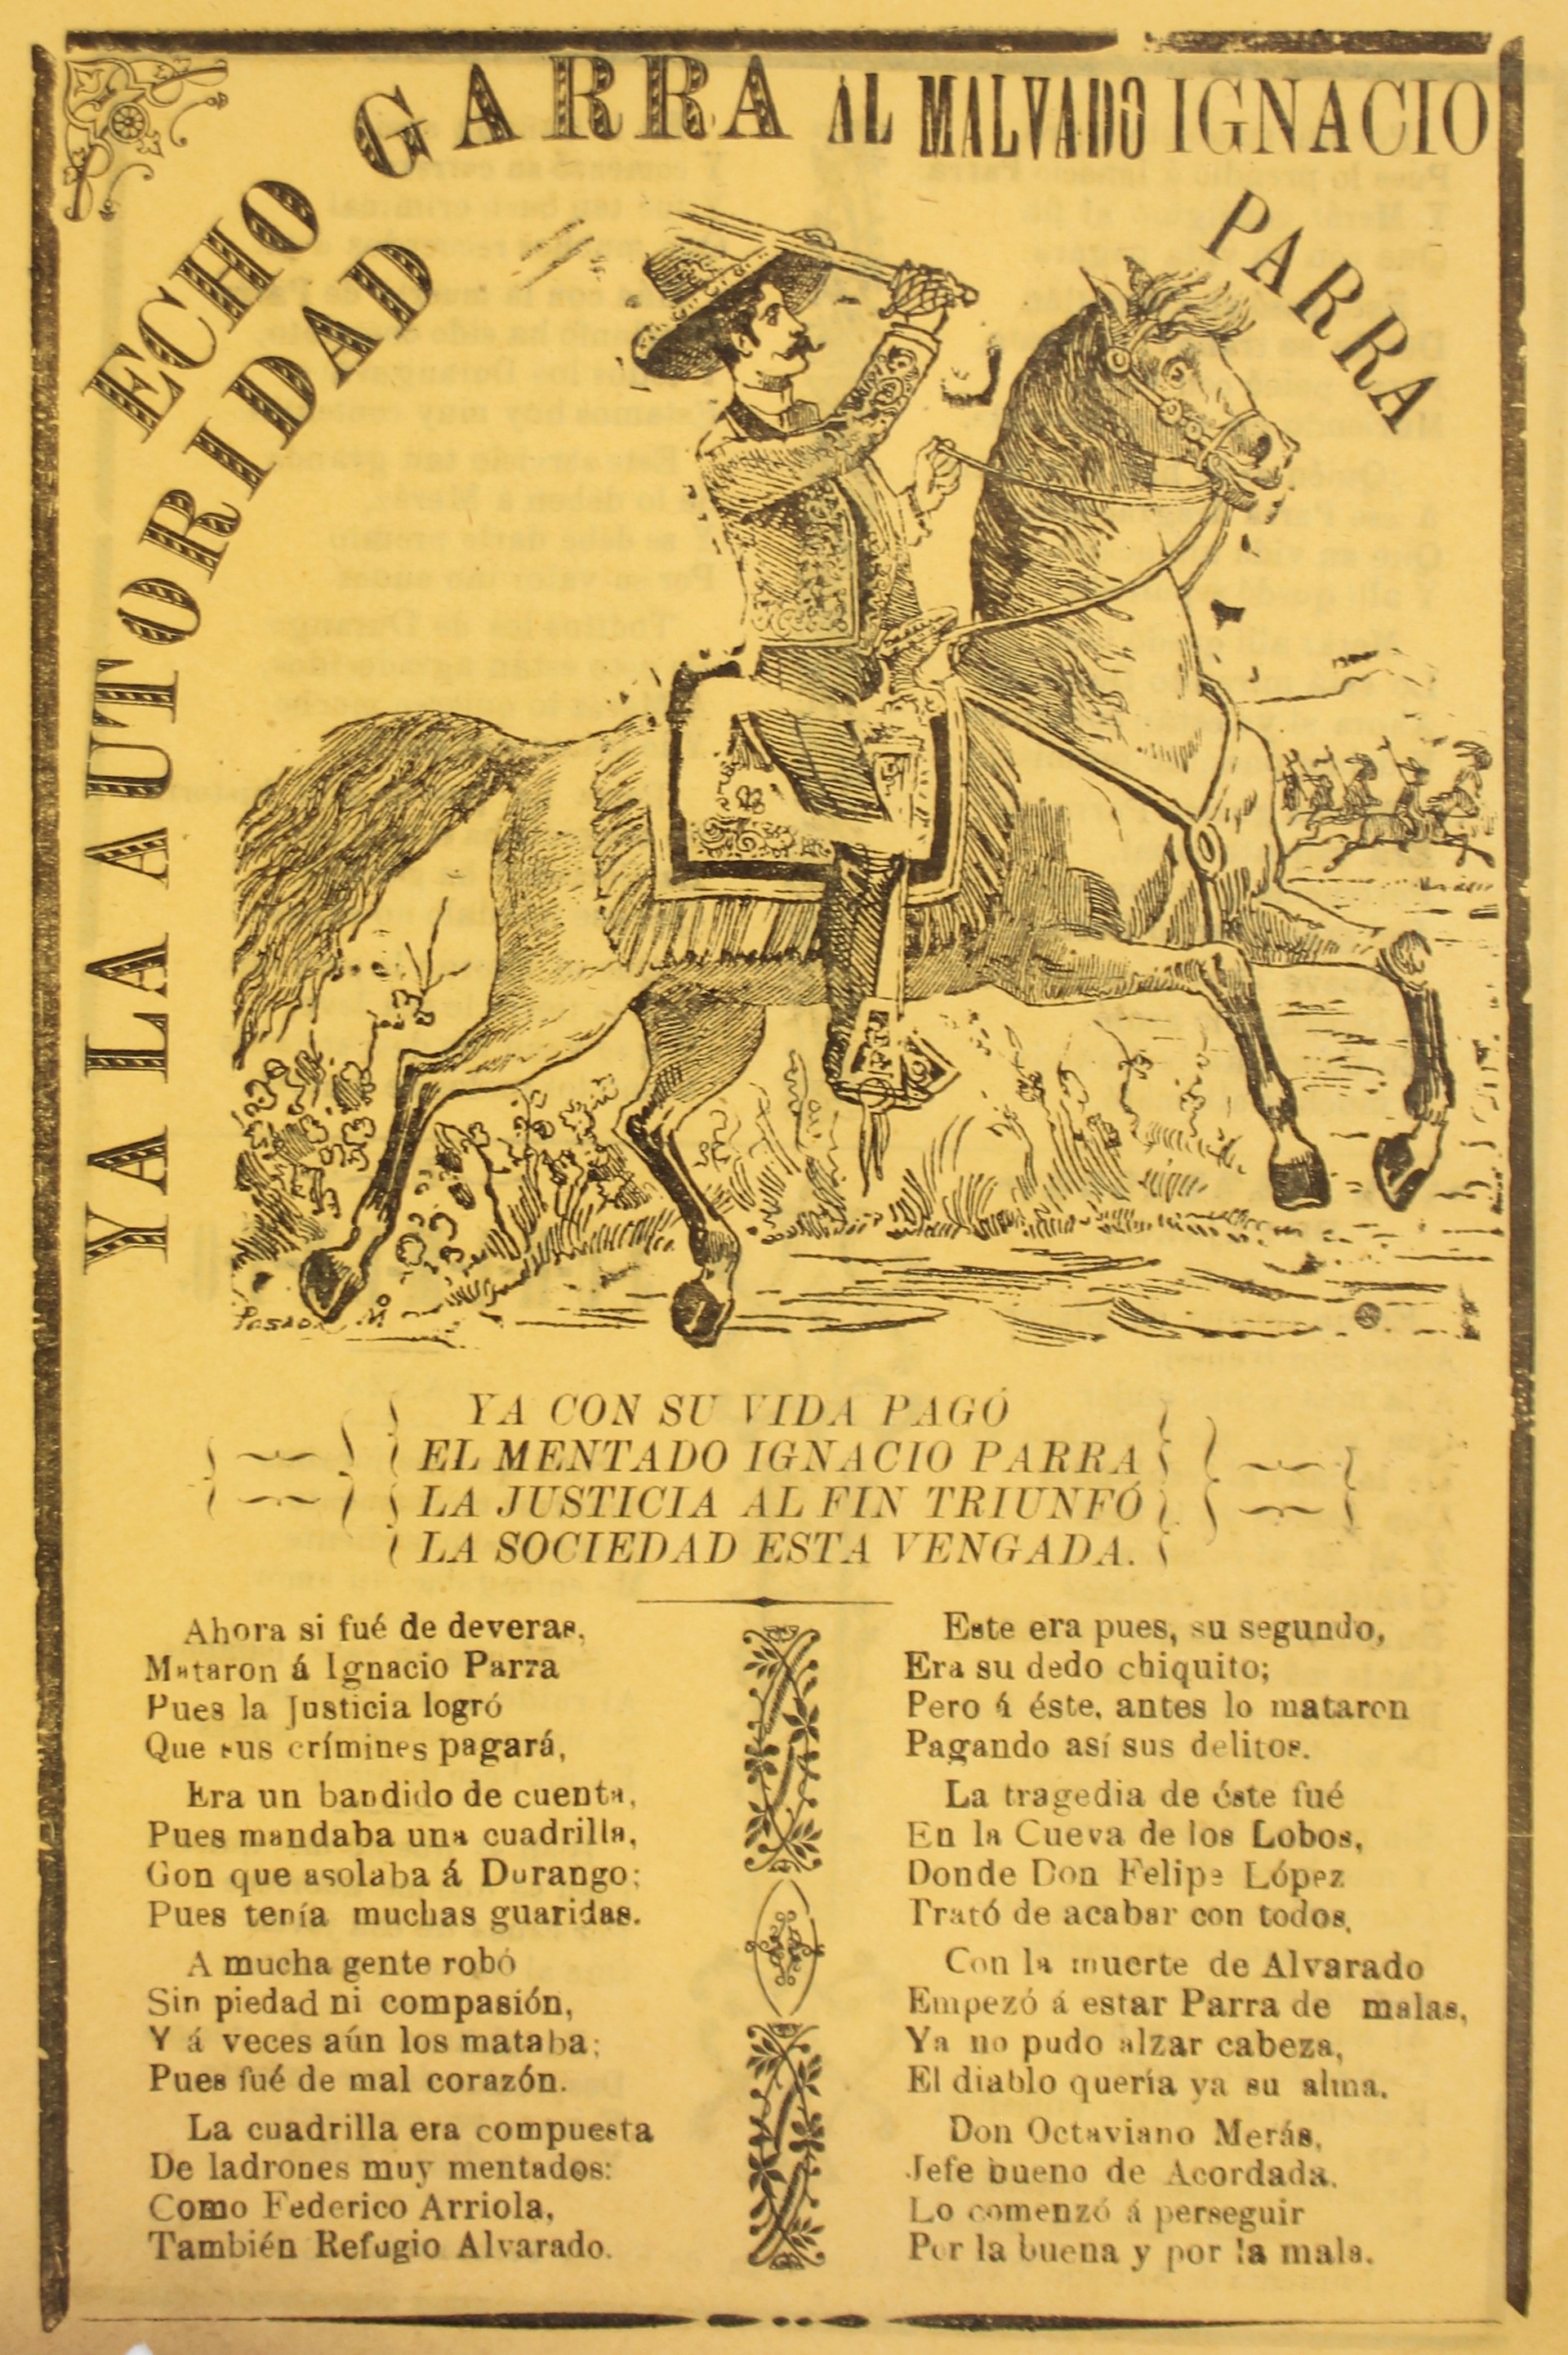 Ya La Autoridad by José Guadalupe Posada (1852 - 1913)